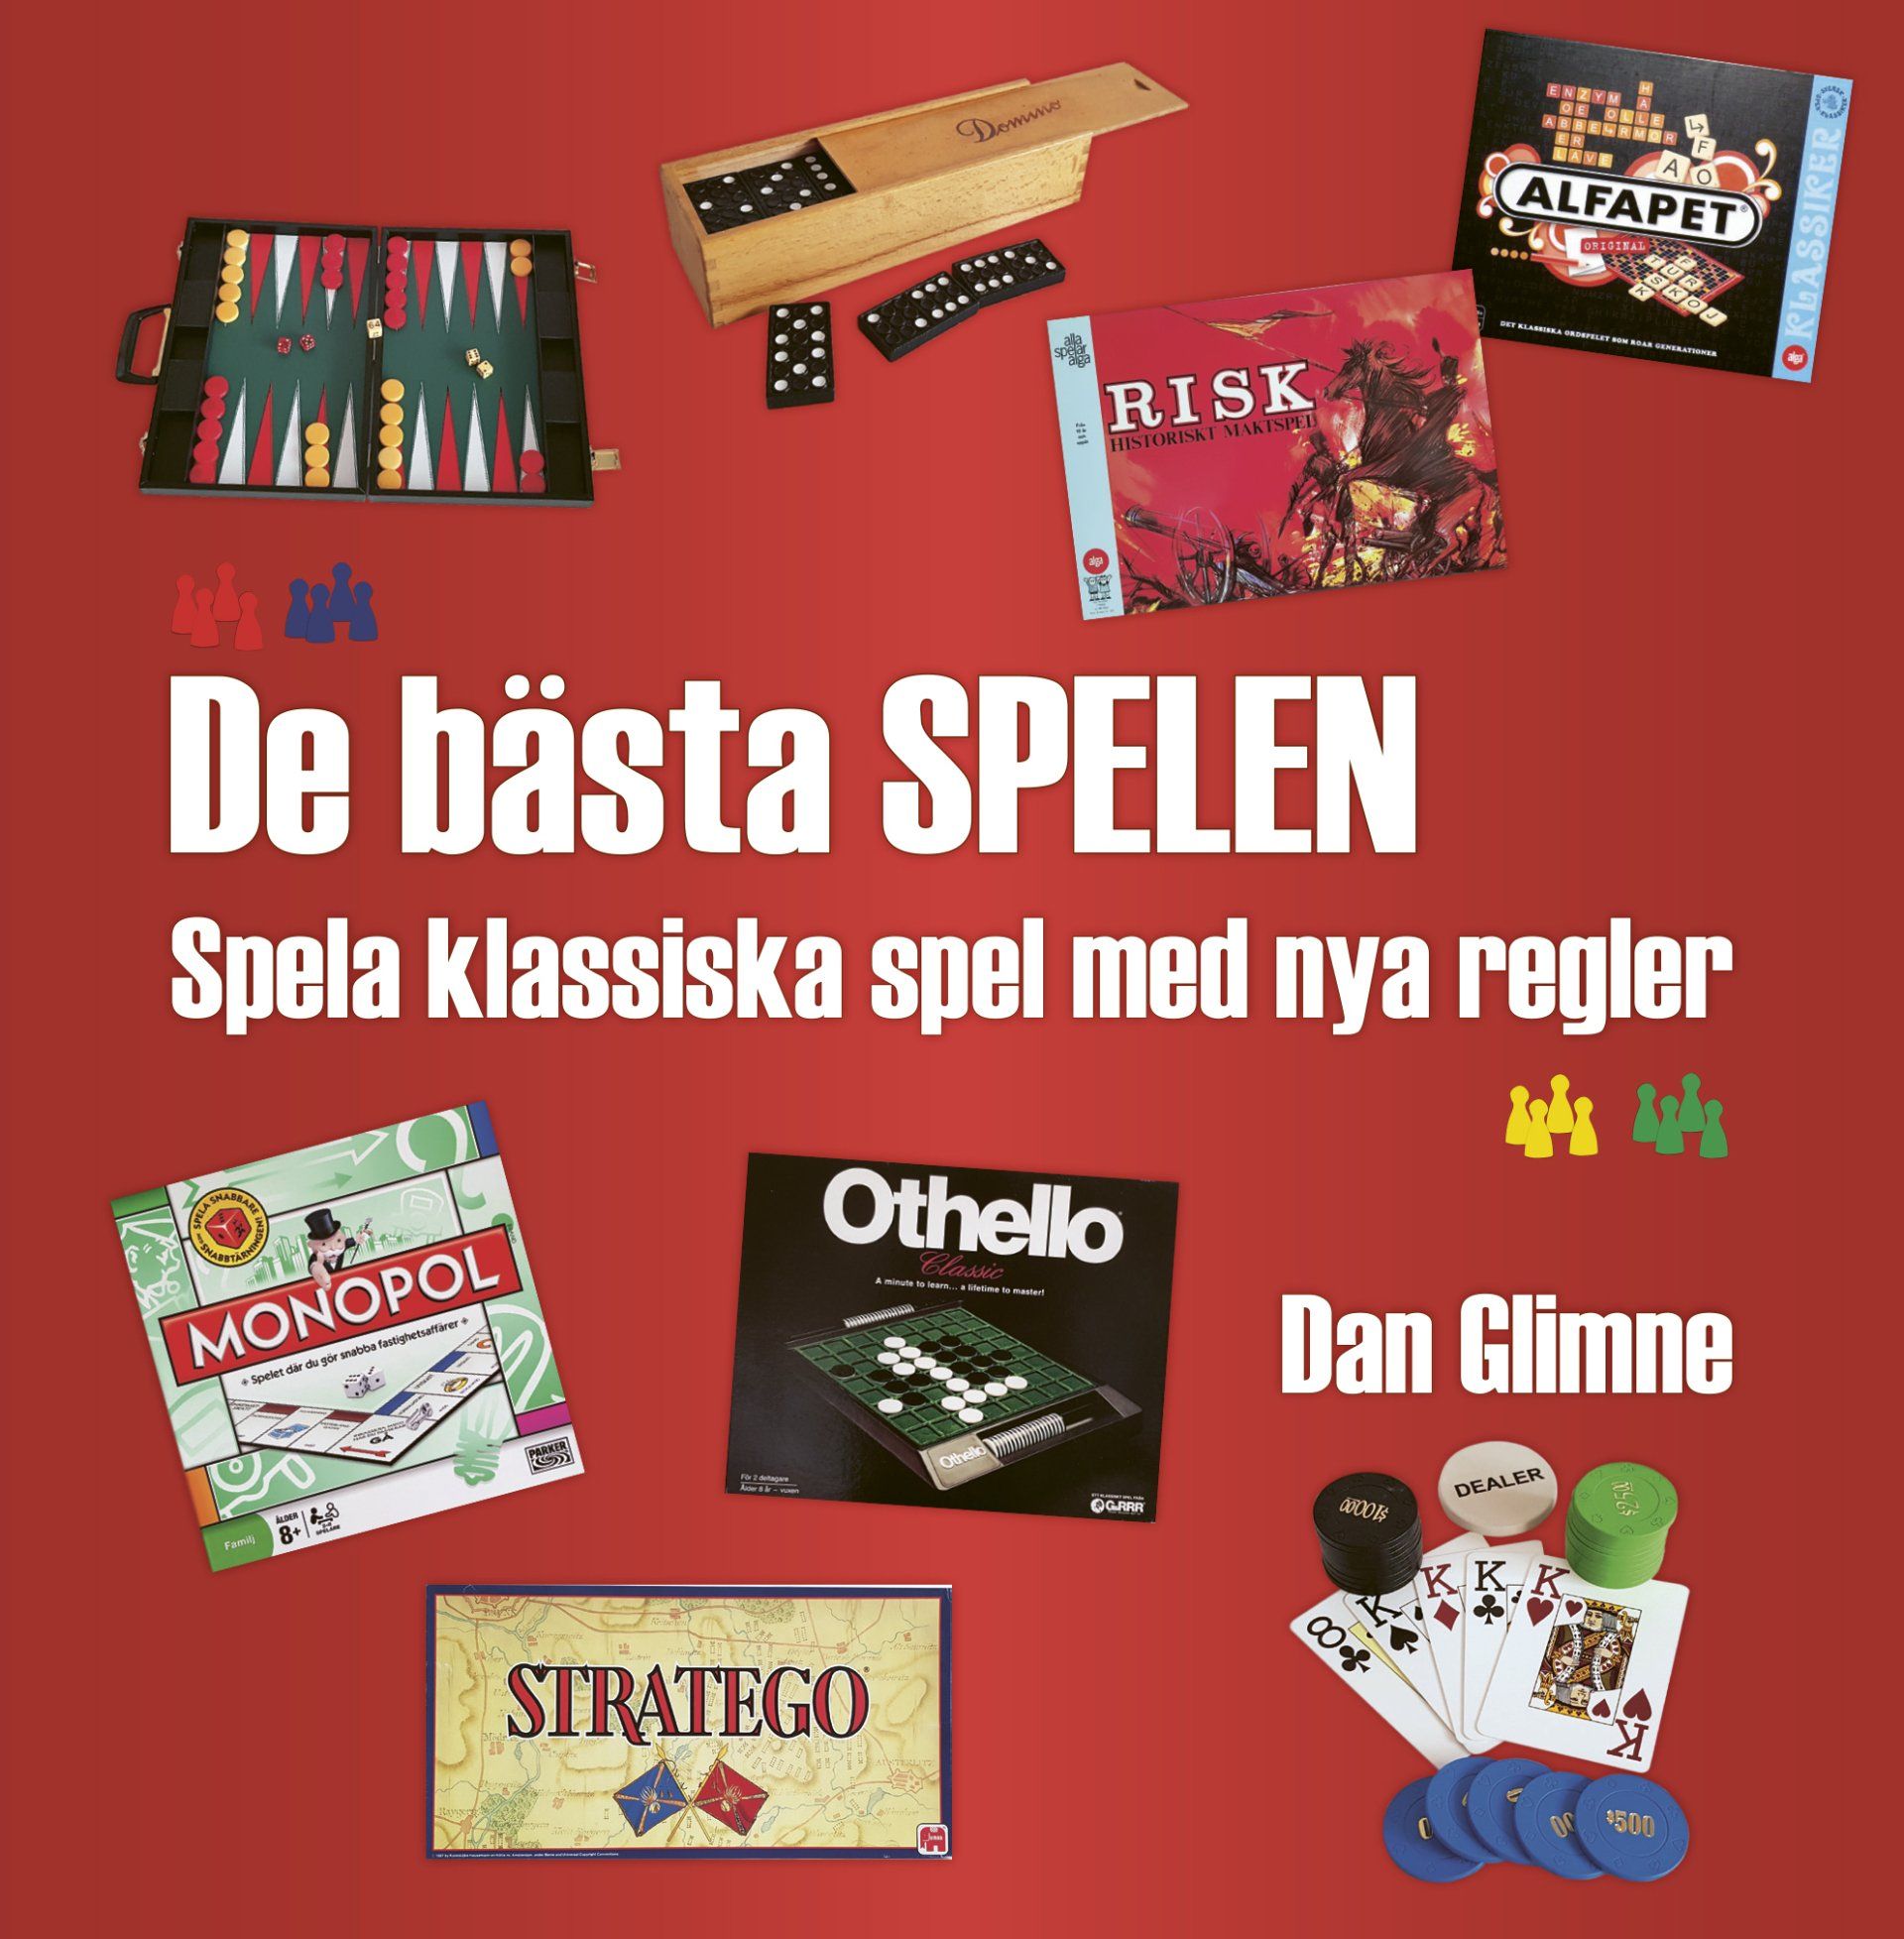 Boken De bästa spelen: Spela klassiska spel med nya regler är skriven av Dan Glimne på Stevali Bokförlag.